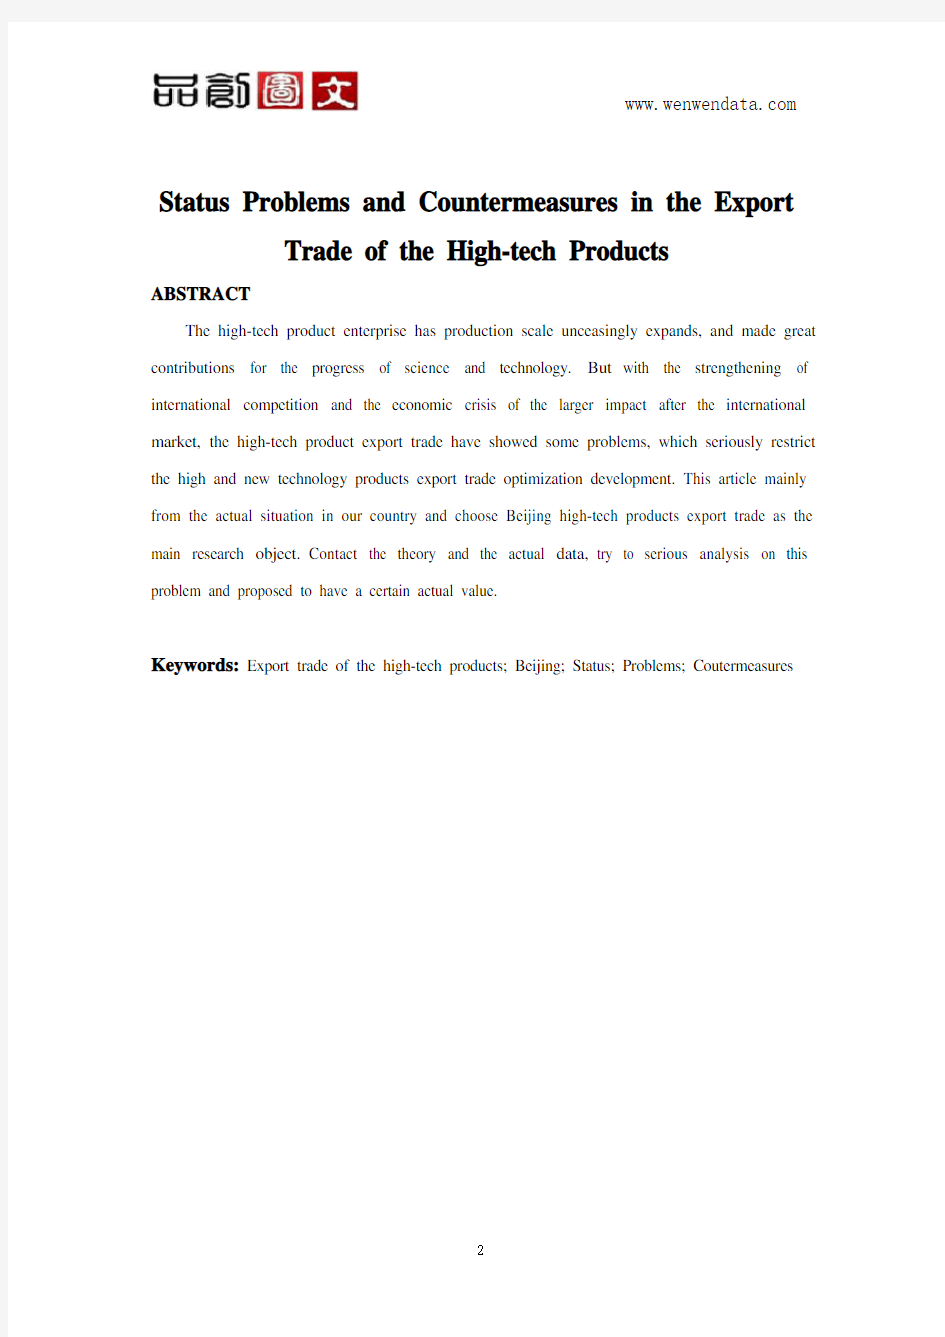 高新技术产品出口贸易的现状、问题及对策毕业论文